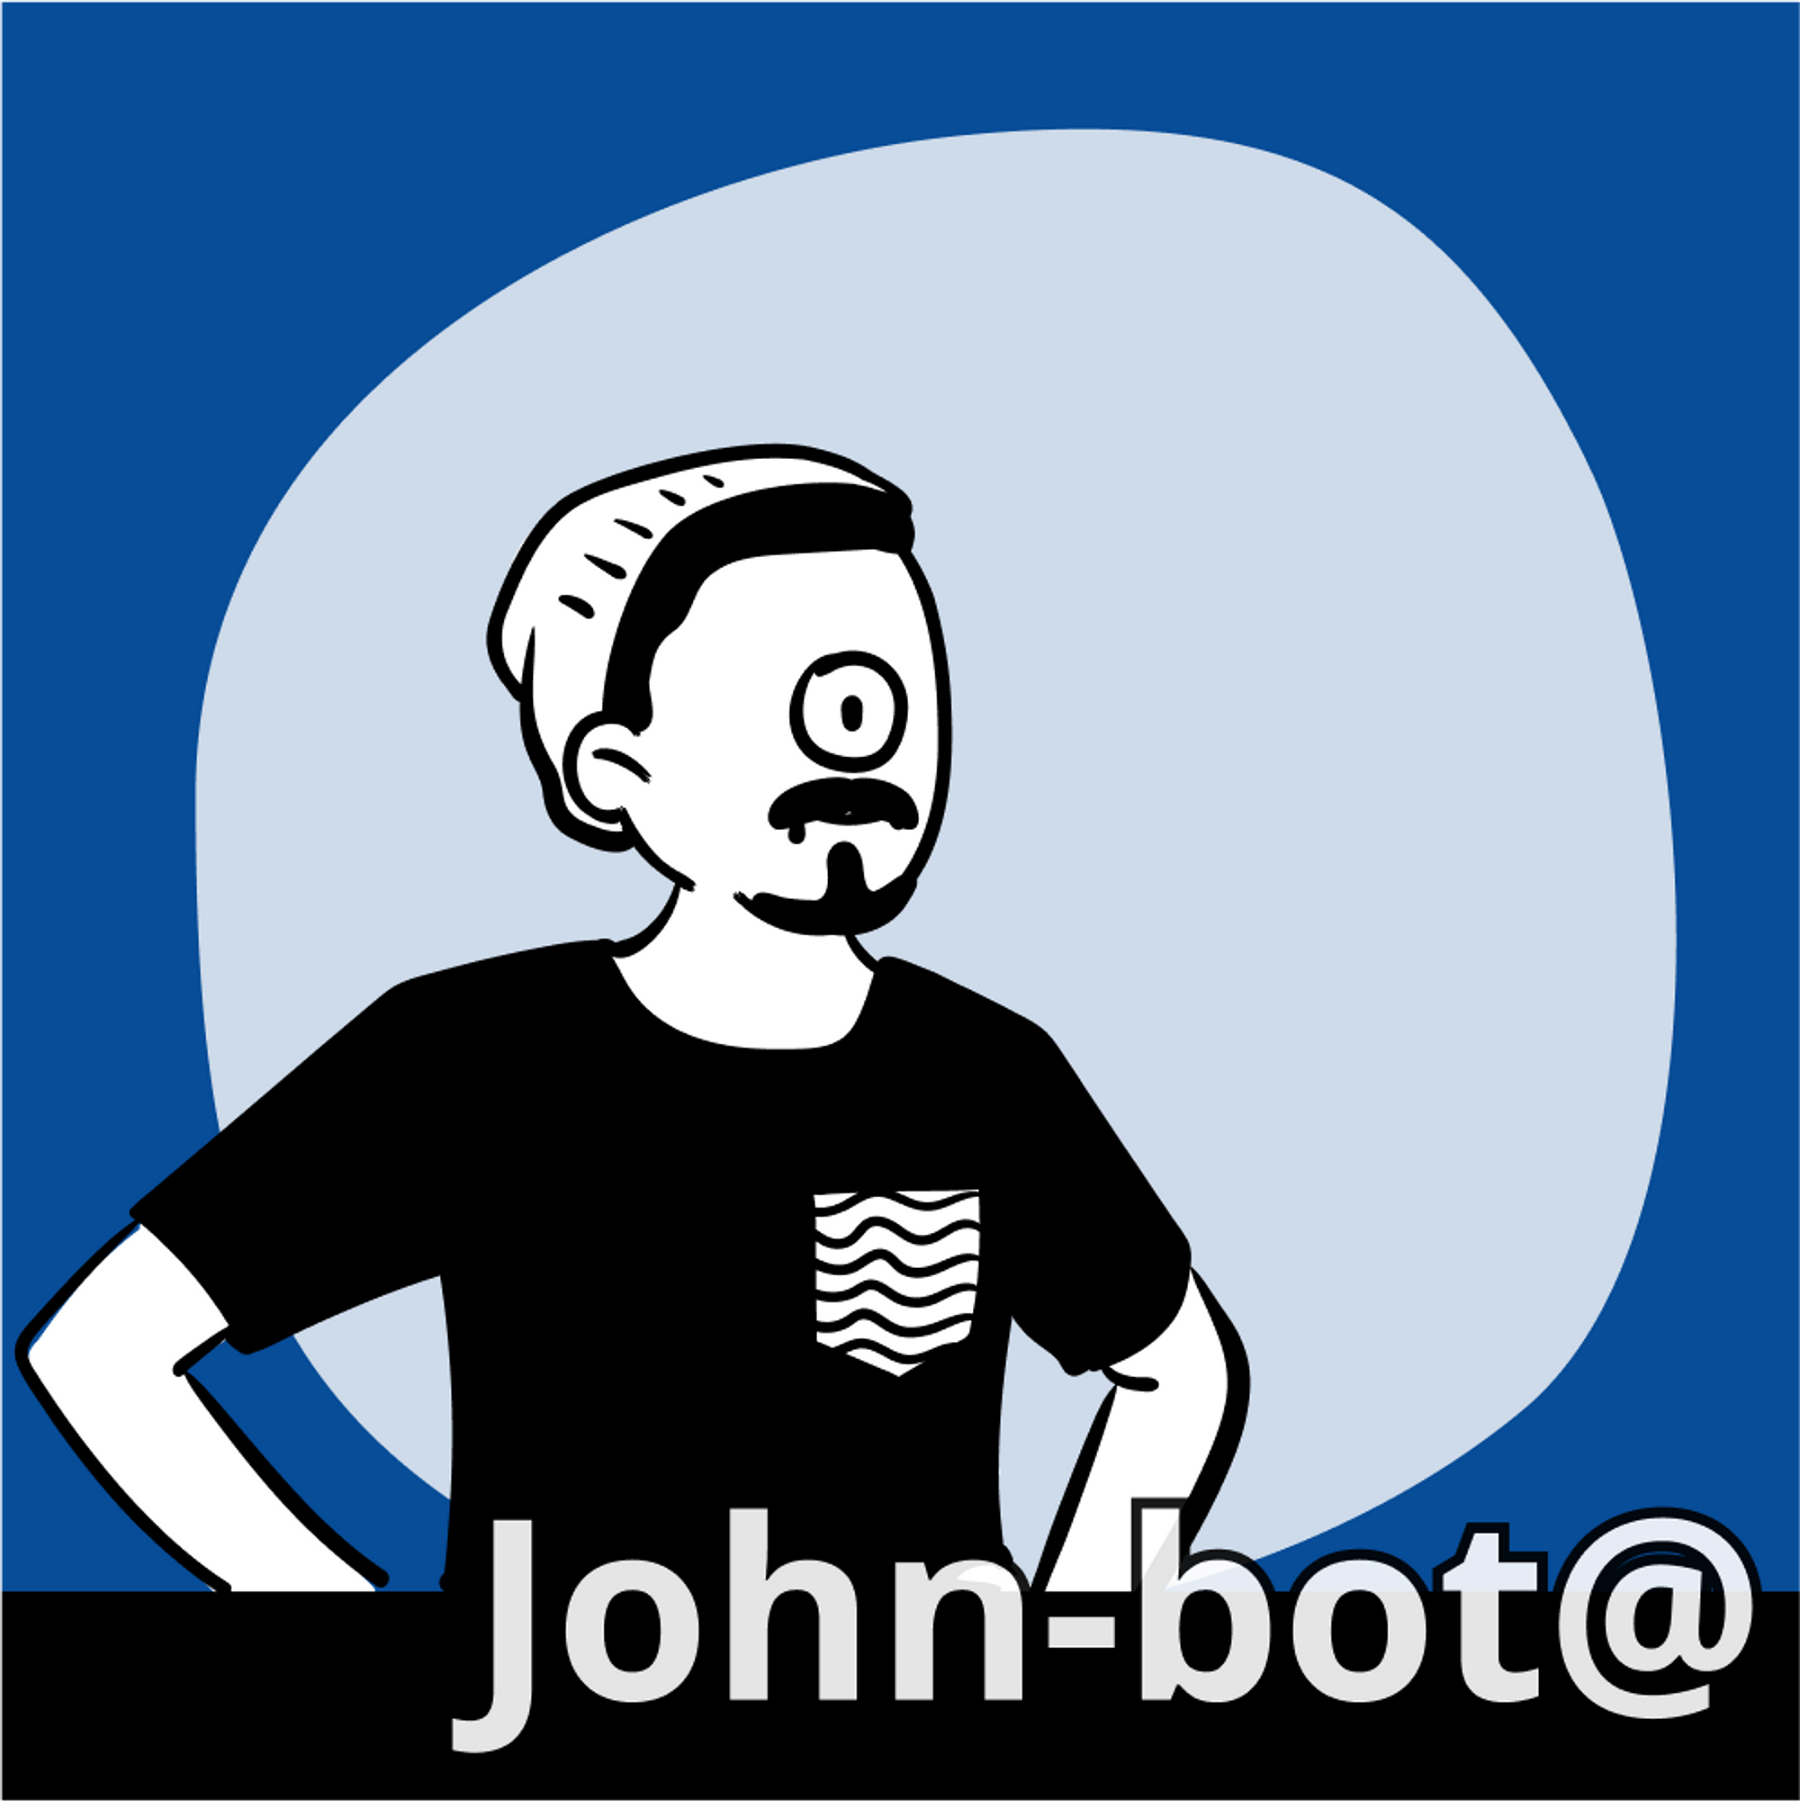 Jon-bot